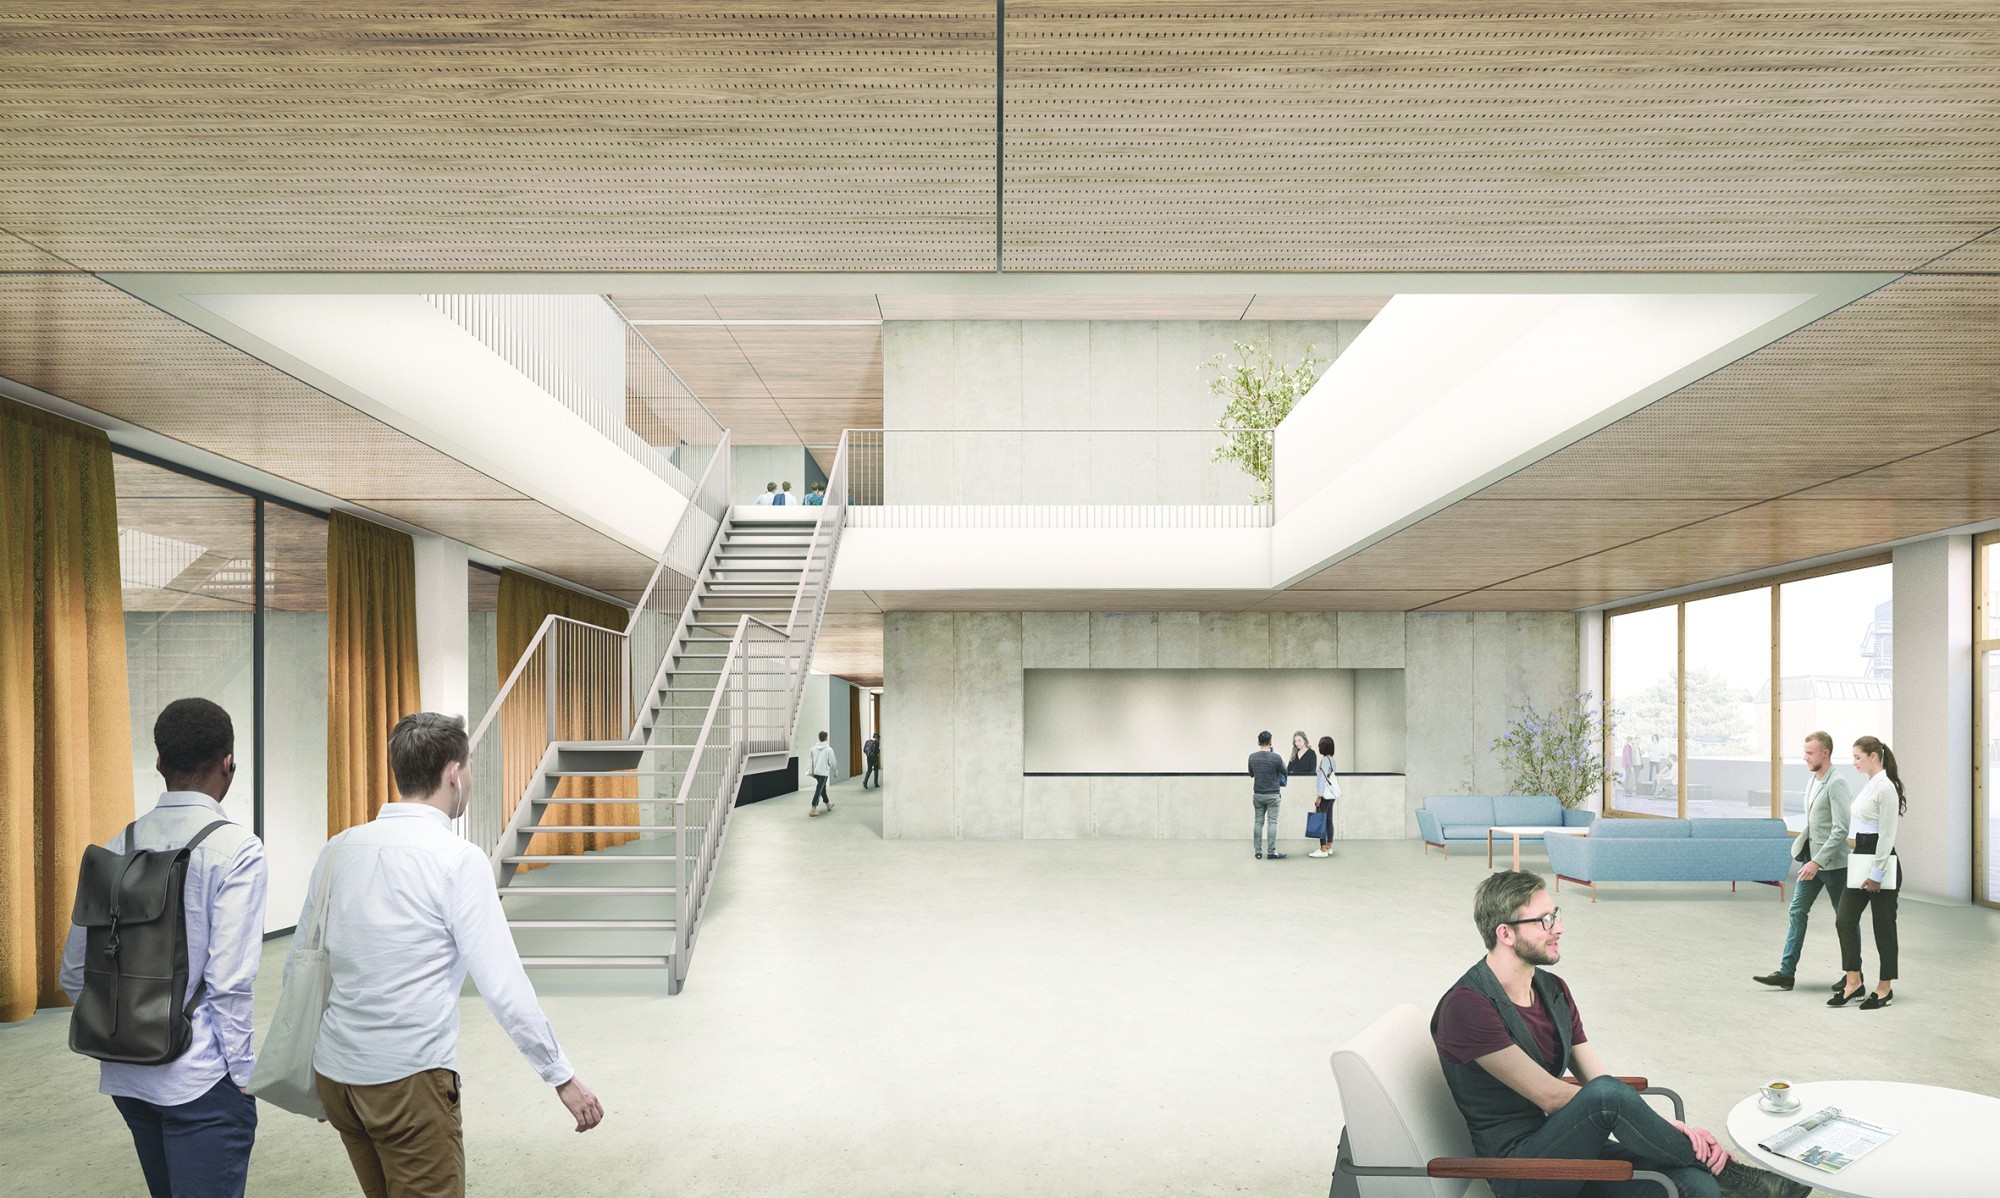 «Charlie», le projet du bureau lausannois Background Architecture a remporté le concours d’architecture pour le nouveau bâtiment des Sciences humaines sur le campus de l’Université de Lausanne